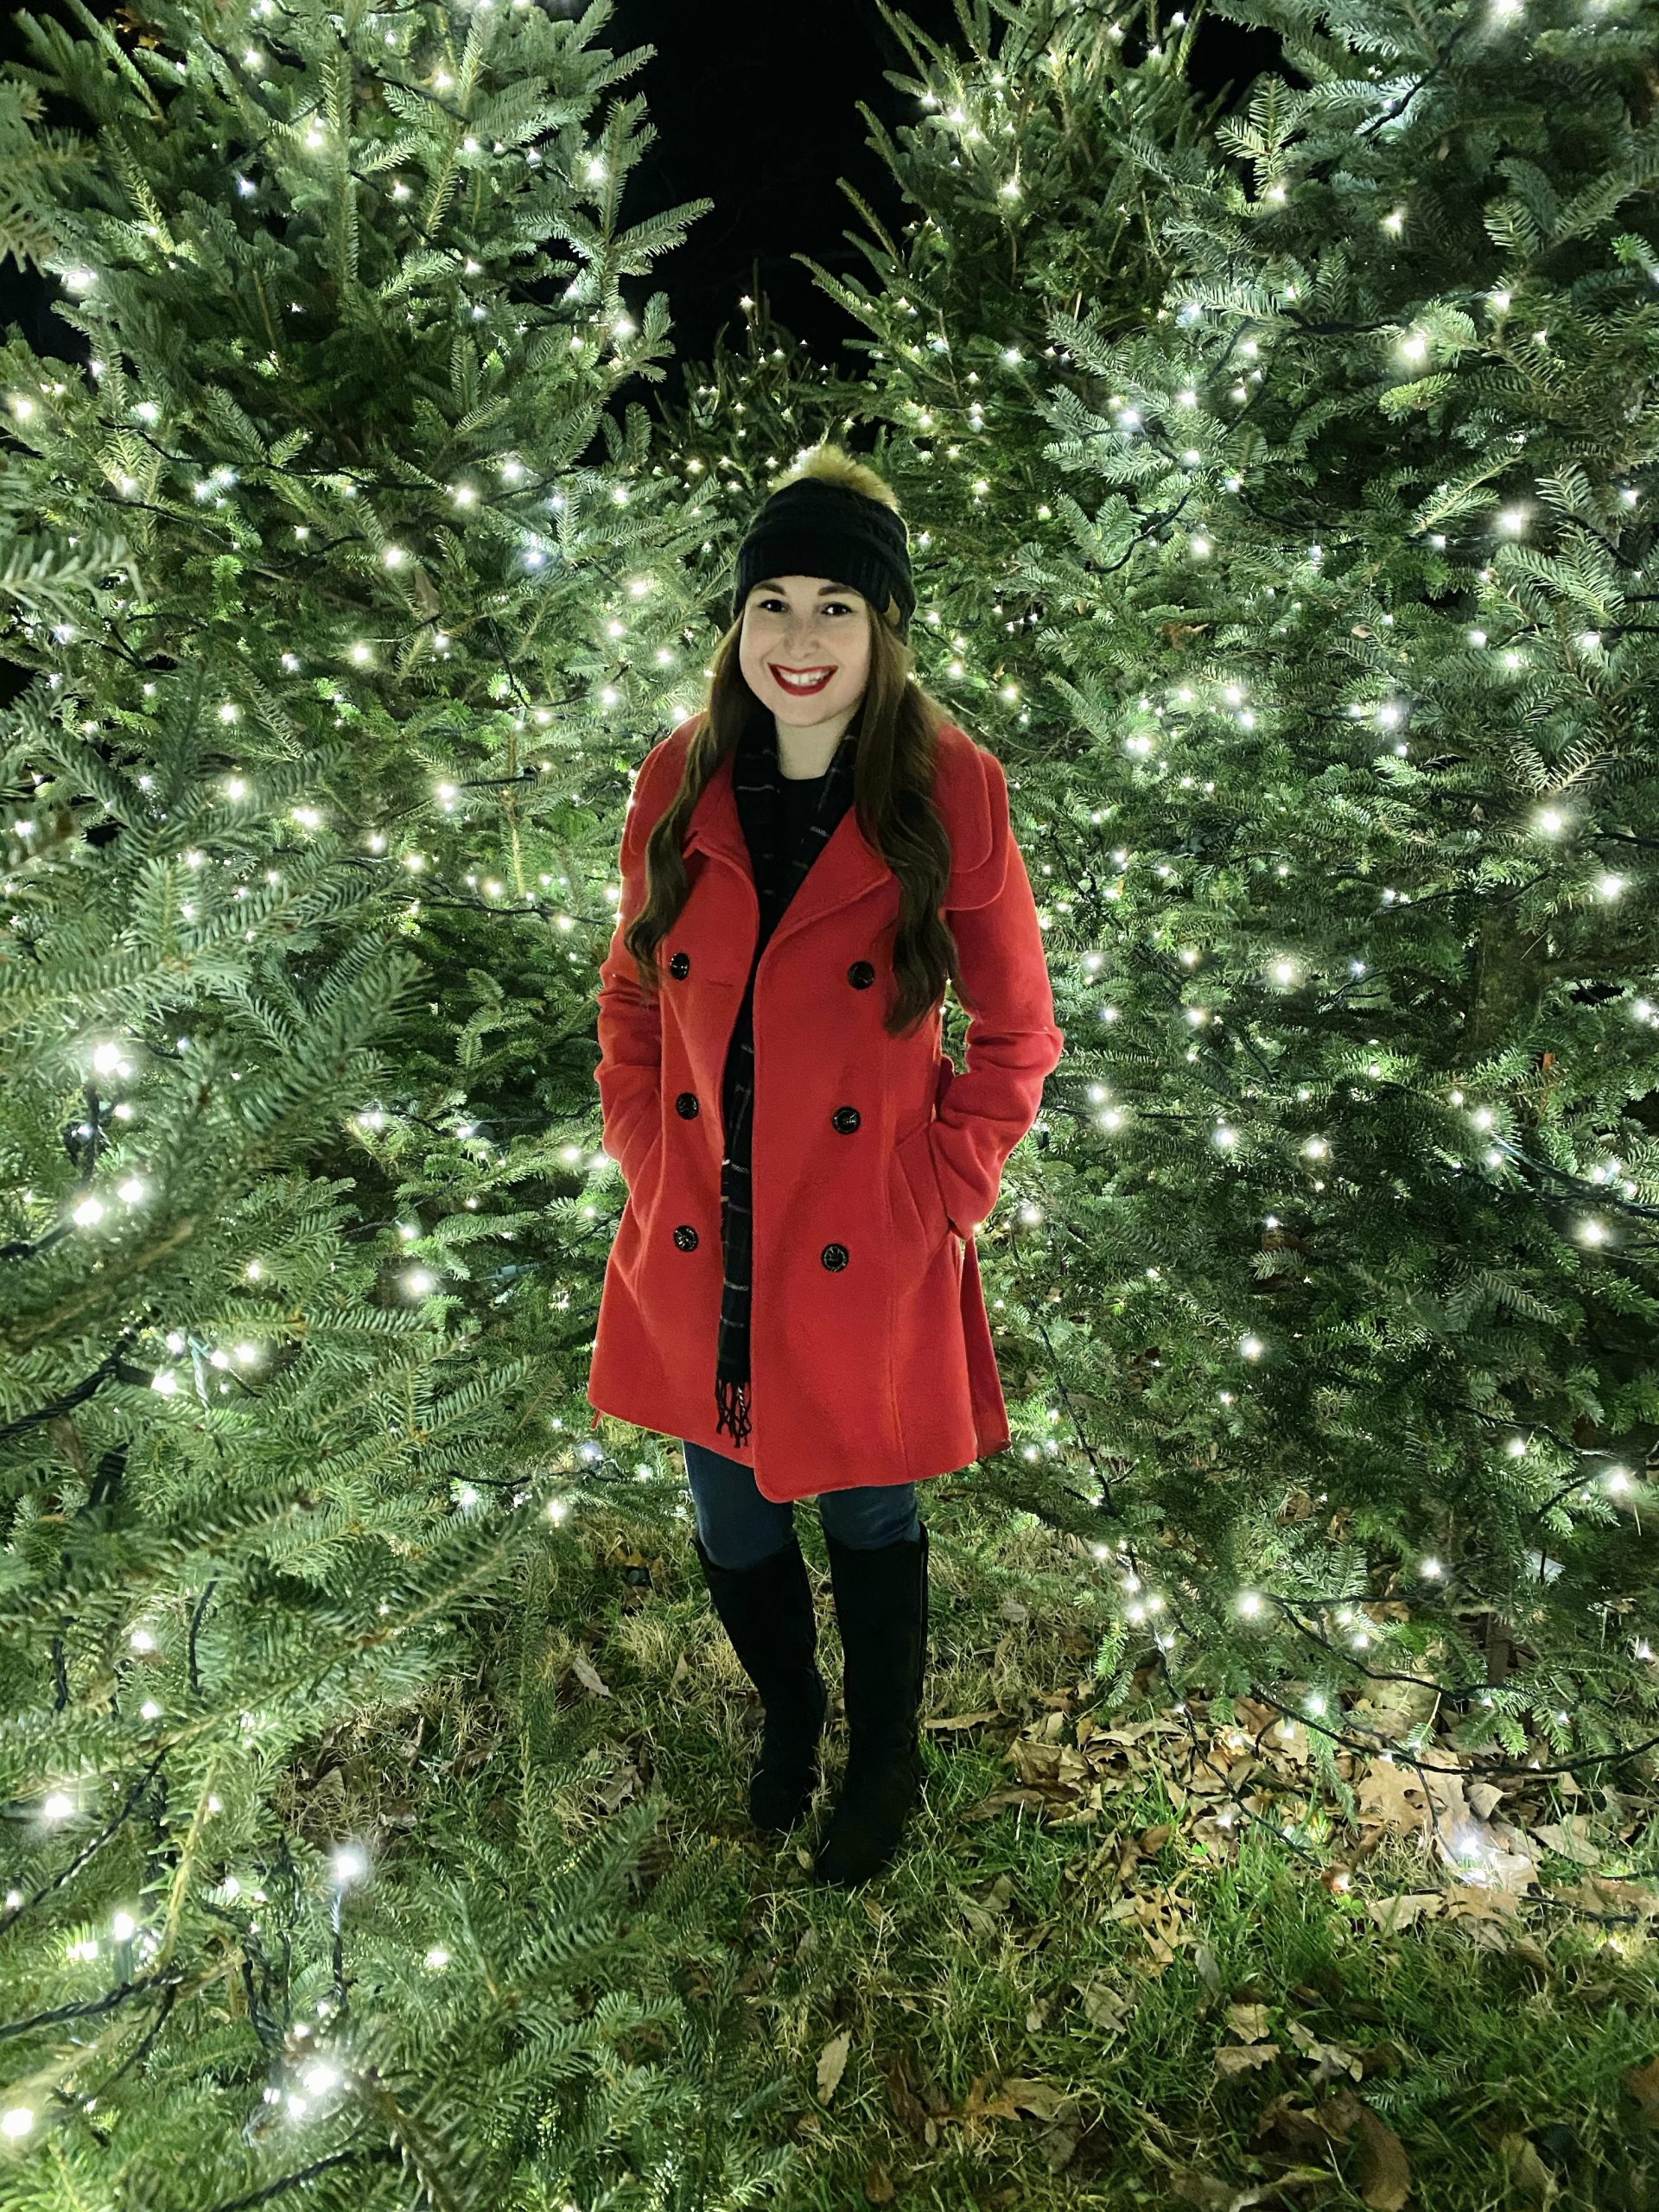 Holiday-Lights-Instagram-Blog-scaled